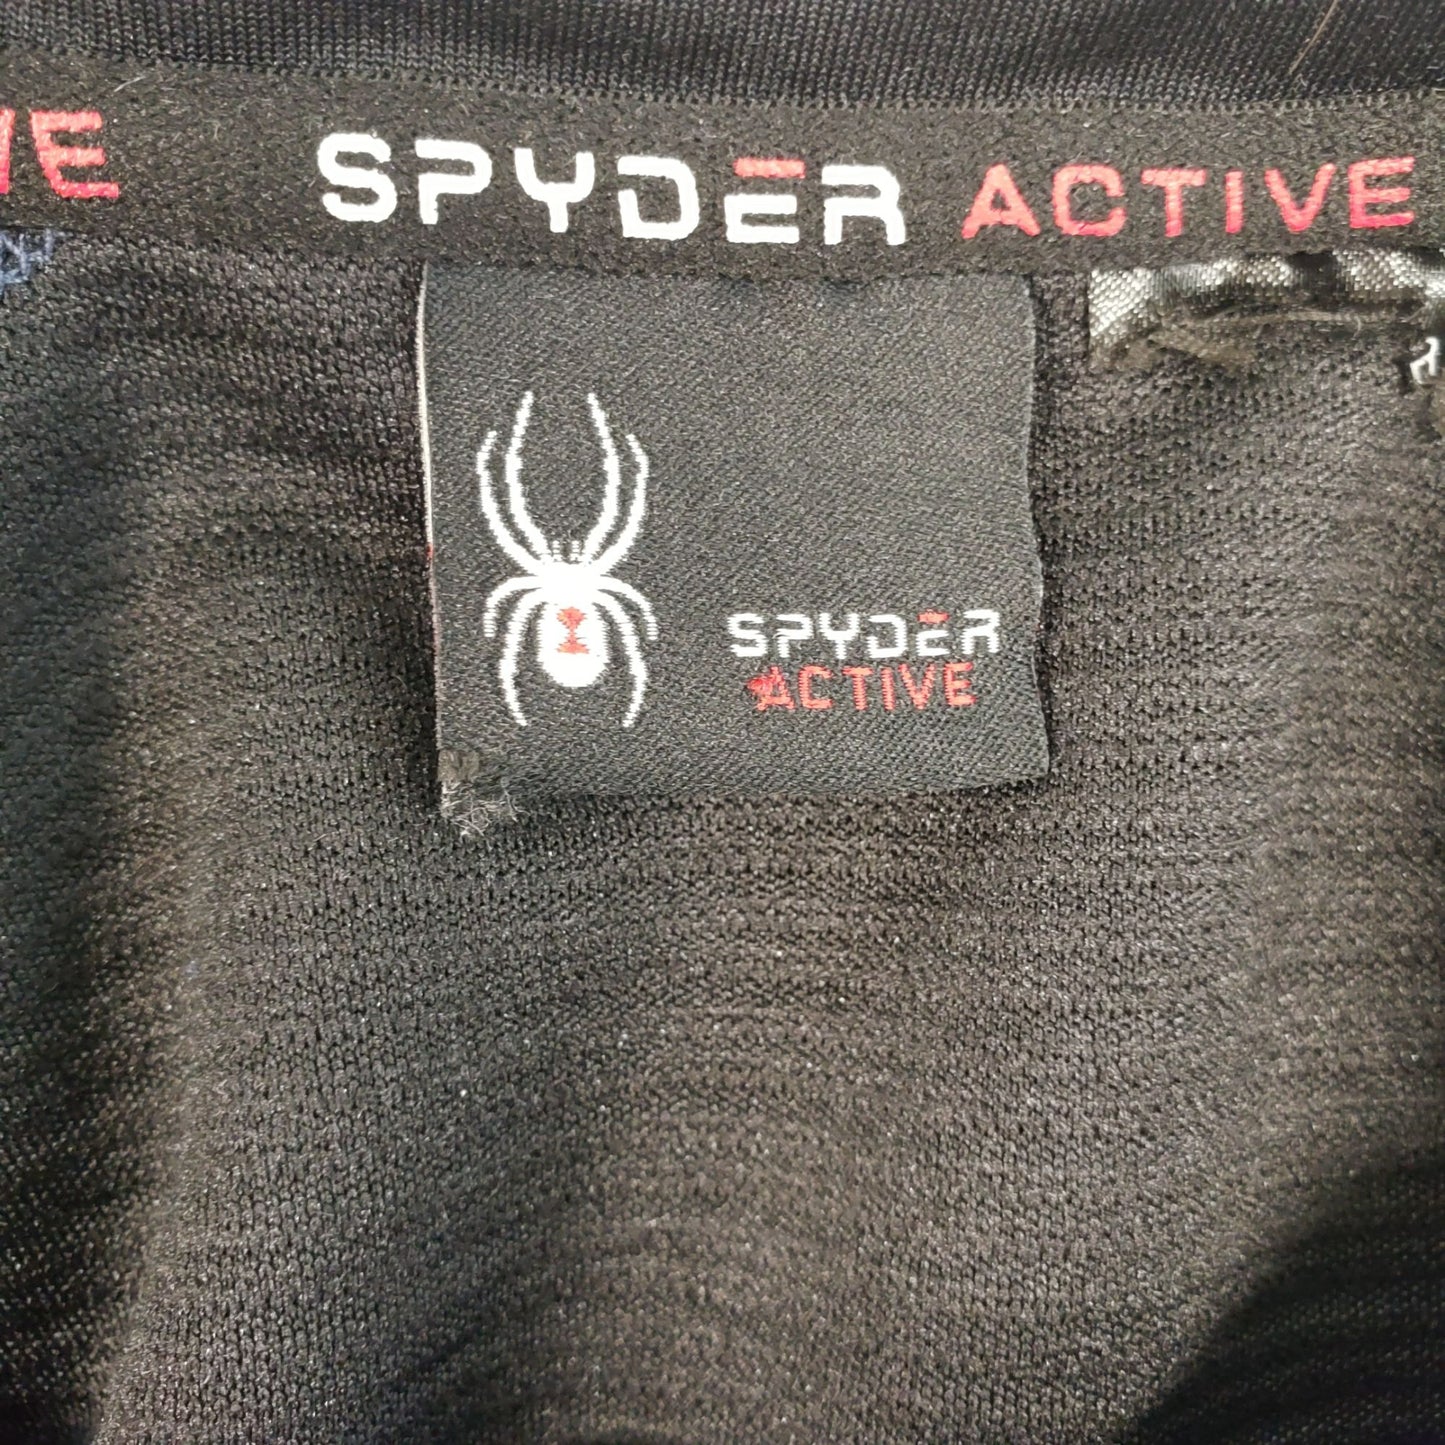 Spyder Active ProWeb Fleece Lined Activewear Top